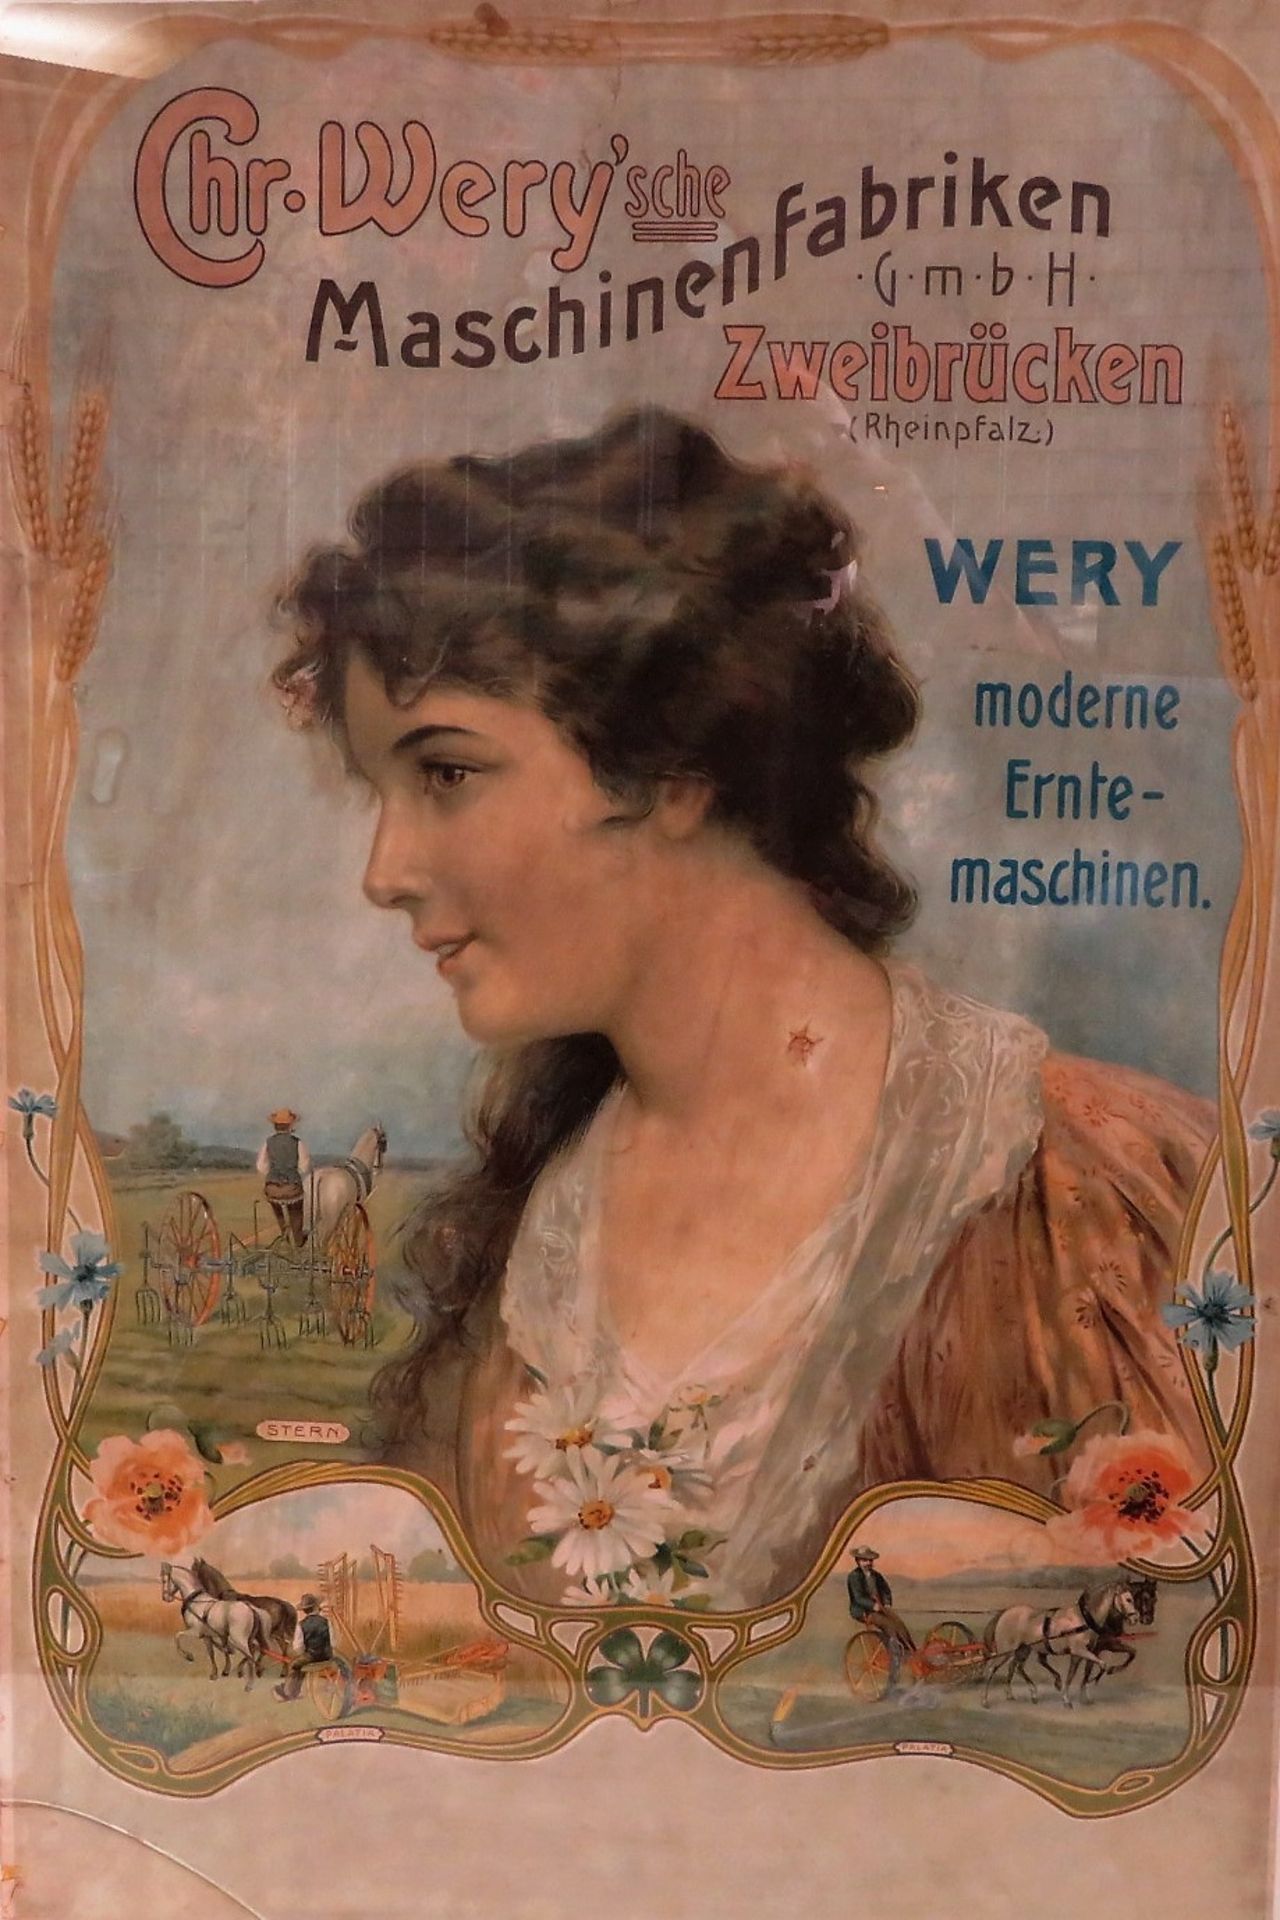 Jugendstil Plakat, um 1900, "Chr. Wery'sche Maschinenfabriken Zweibrücken", 81 x 54 cm, o.R.